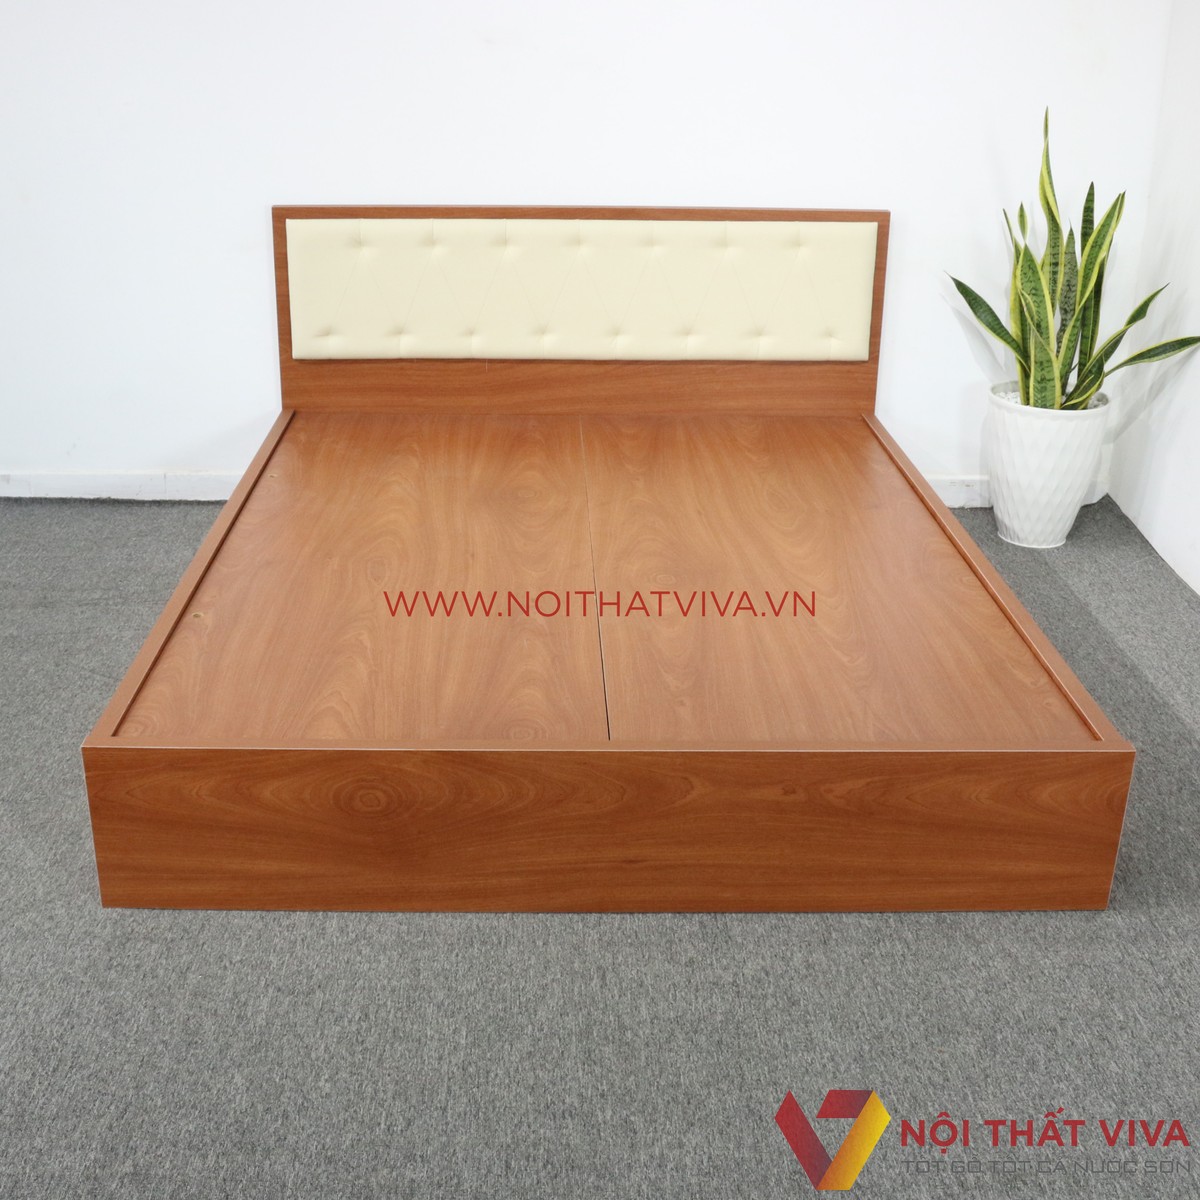 Bạn đang tìm kiếm một chiếc giường ngủ gỗ giá rẻ nhưng vẫn đảm bảo chất lượng và đẹp mắt? Hãy tham khảo ngay sản phẩm giường ngủ gỗ 1m2 trong bộ sưu tập của chúng tôi. Với chất liệu gỗ tự nhiên và thiết kế tối giản nhưng đầy tinh tế, giường ngủ sẽ là sự lựa chọn hoàn hảo cho không gian phòng ngủ của bạn.